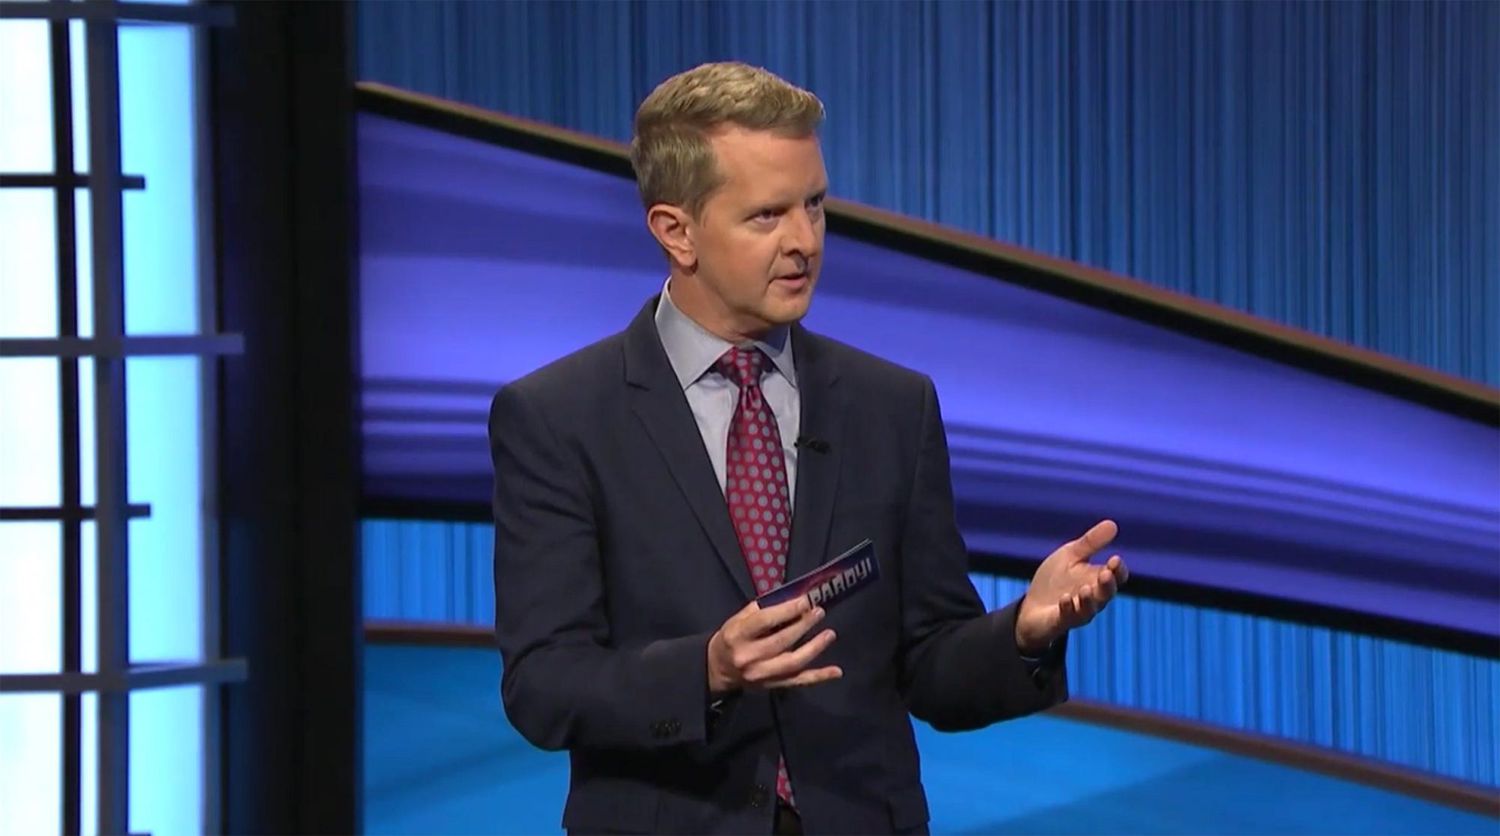 Ken Jennings hosting Jeopardy